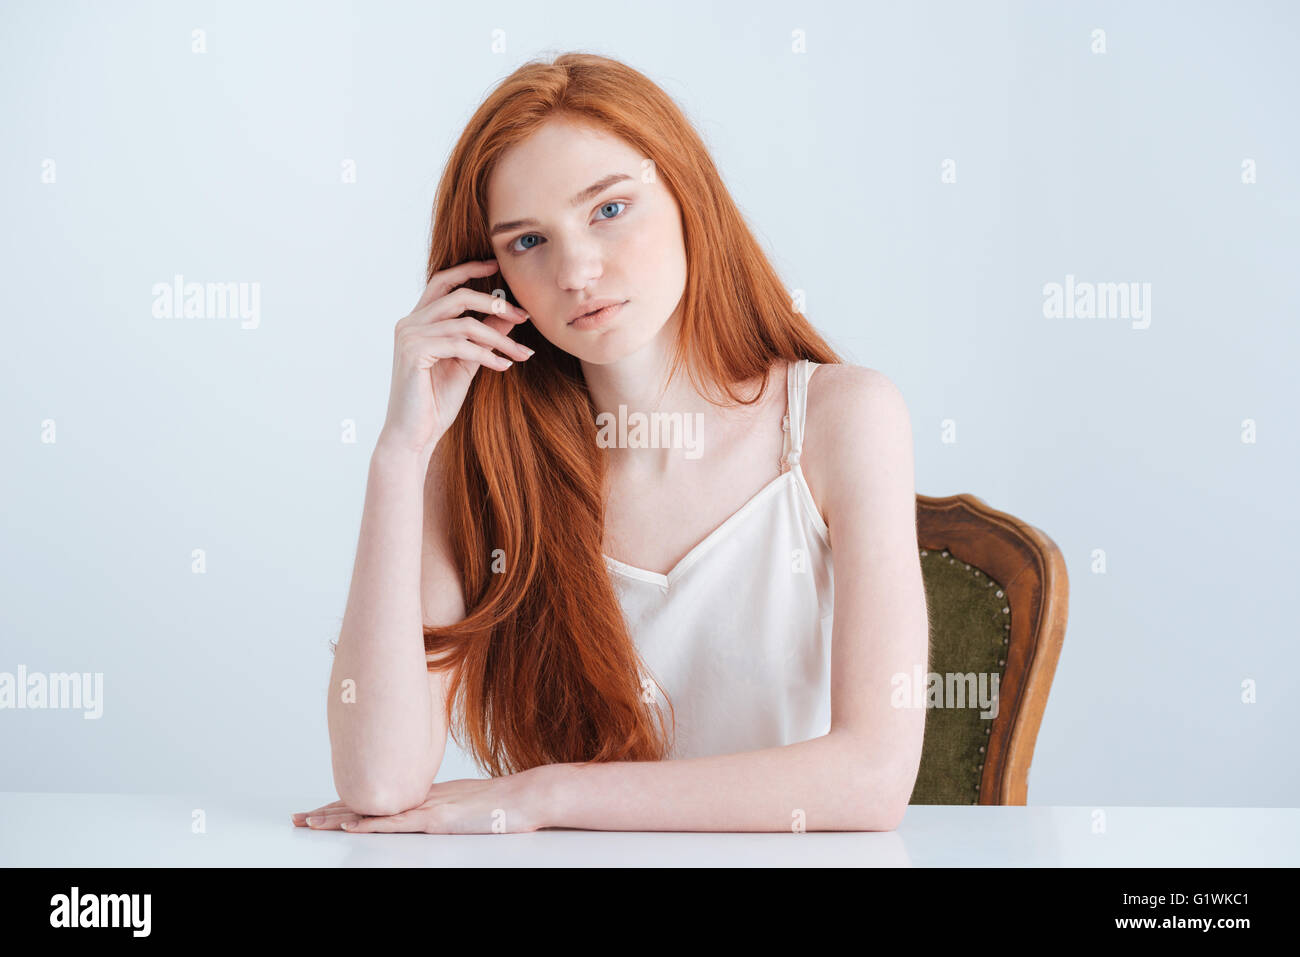 Charmante femme rousse assise à la table et à la caméra à isolé sur fond blanc Banque D'Images